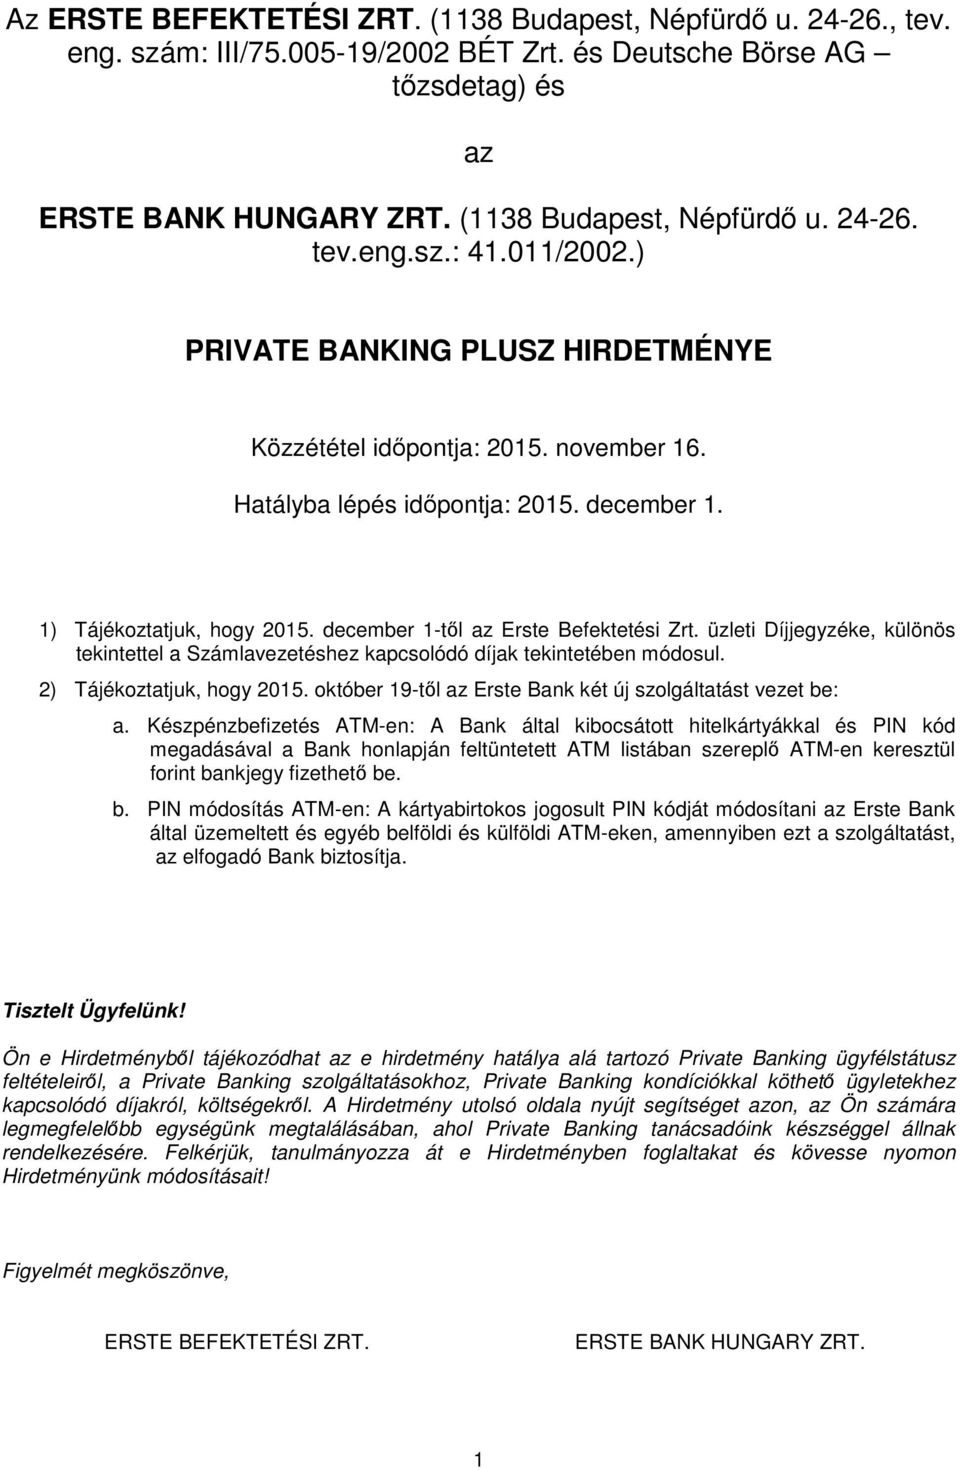 üzleti Díjjegyzéke, különös tekintettel a Számlavezetéshez kapcsolódó díjak tekintetében módosul. 2) Tájékoztatjuk, hogy 2015. október 19-től az Erste Bank két új szolgáltatást vezet be: a.